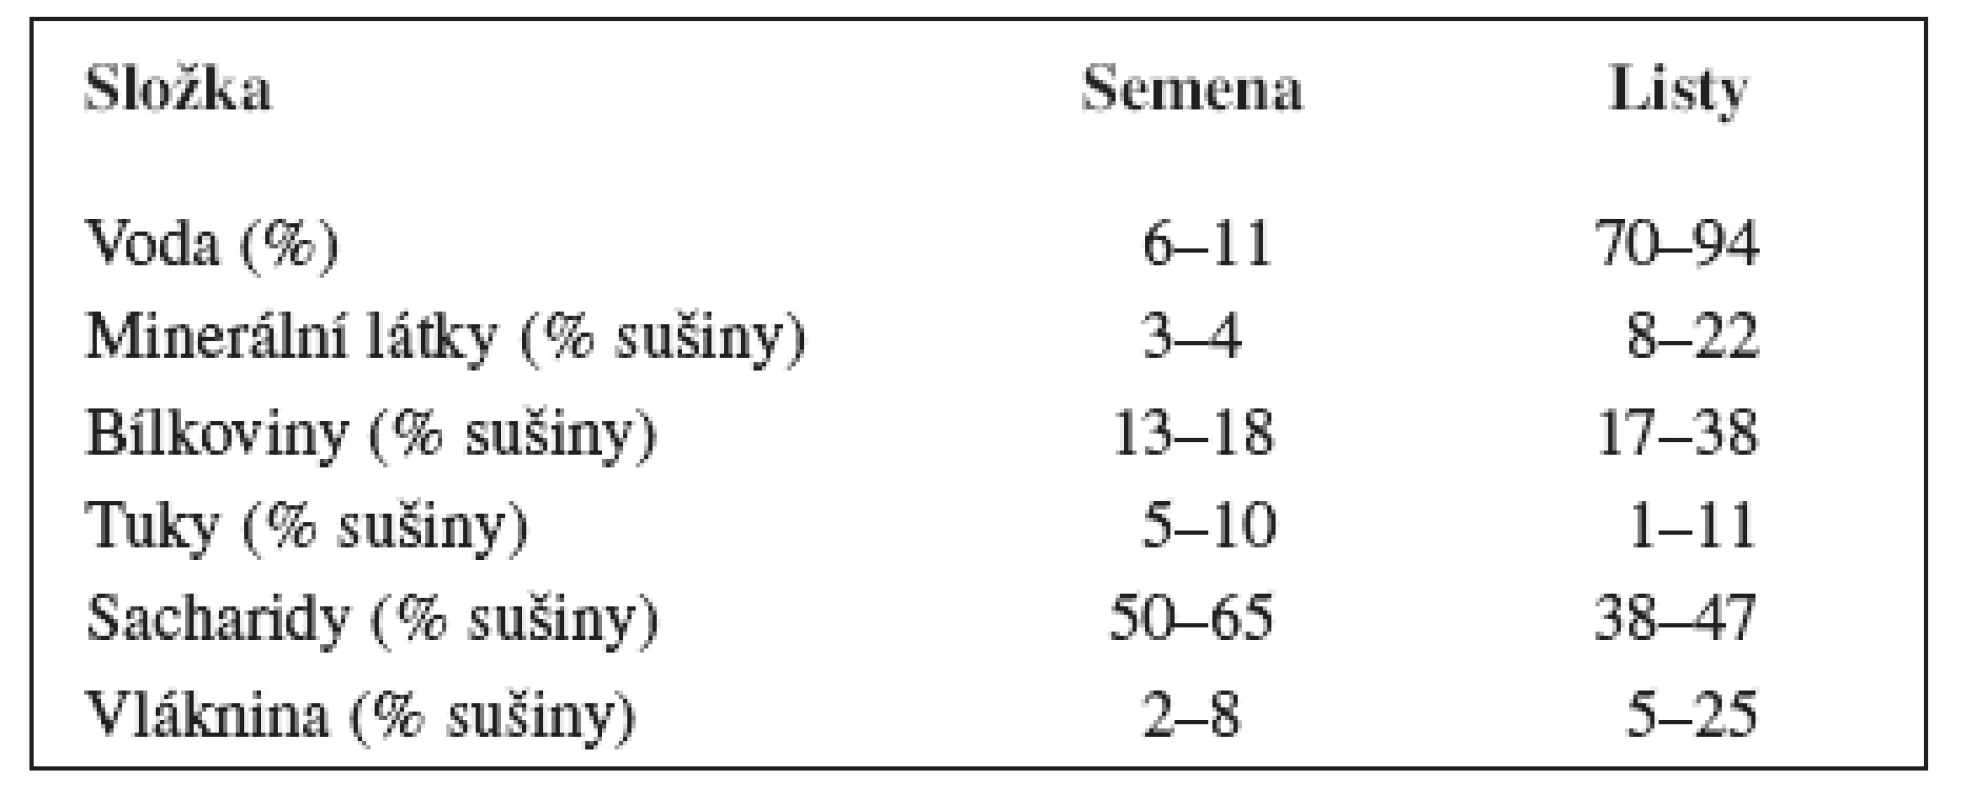 Chemické složení semen a listů pěstovaných druhů
amarantu – upraveno podle &lt;sup&gt;1) 3)&lt;/sup&gt;